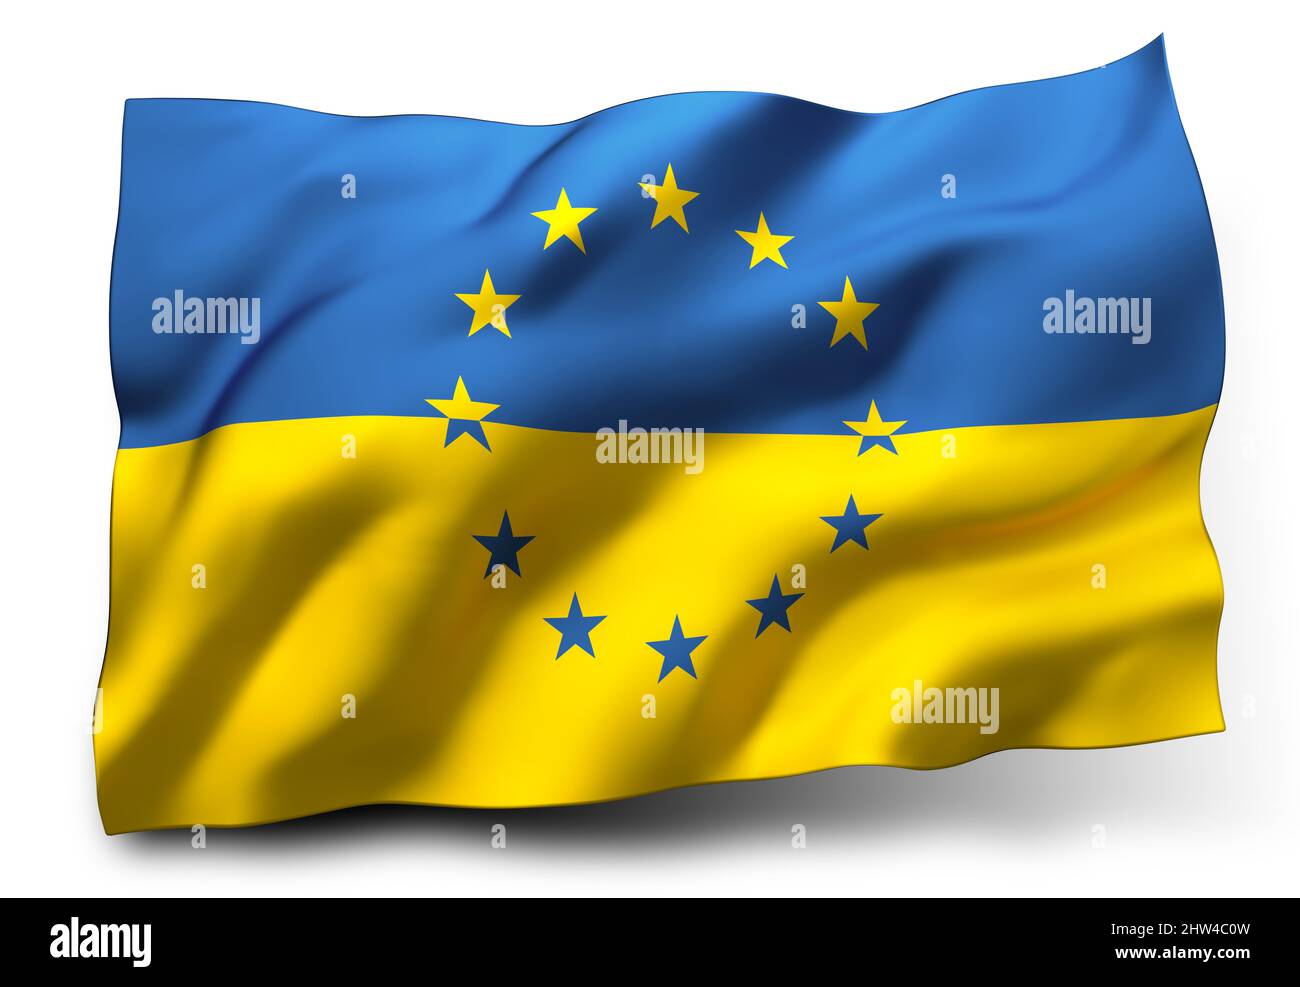 Winkende Flagge der Ukraine, mit den Sternen der Flagge der Europäischen Union, isoliert auf weißem Hintergrund Stockfoto